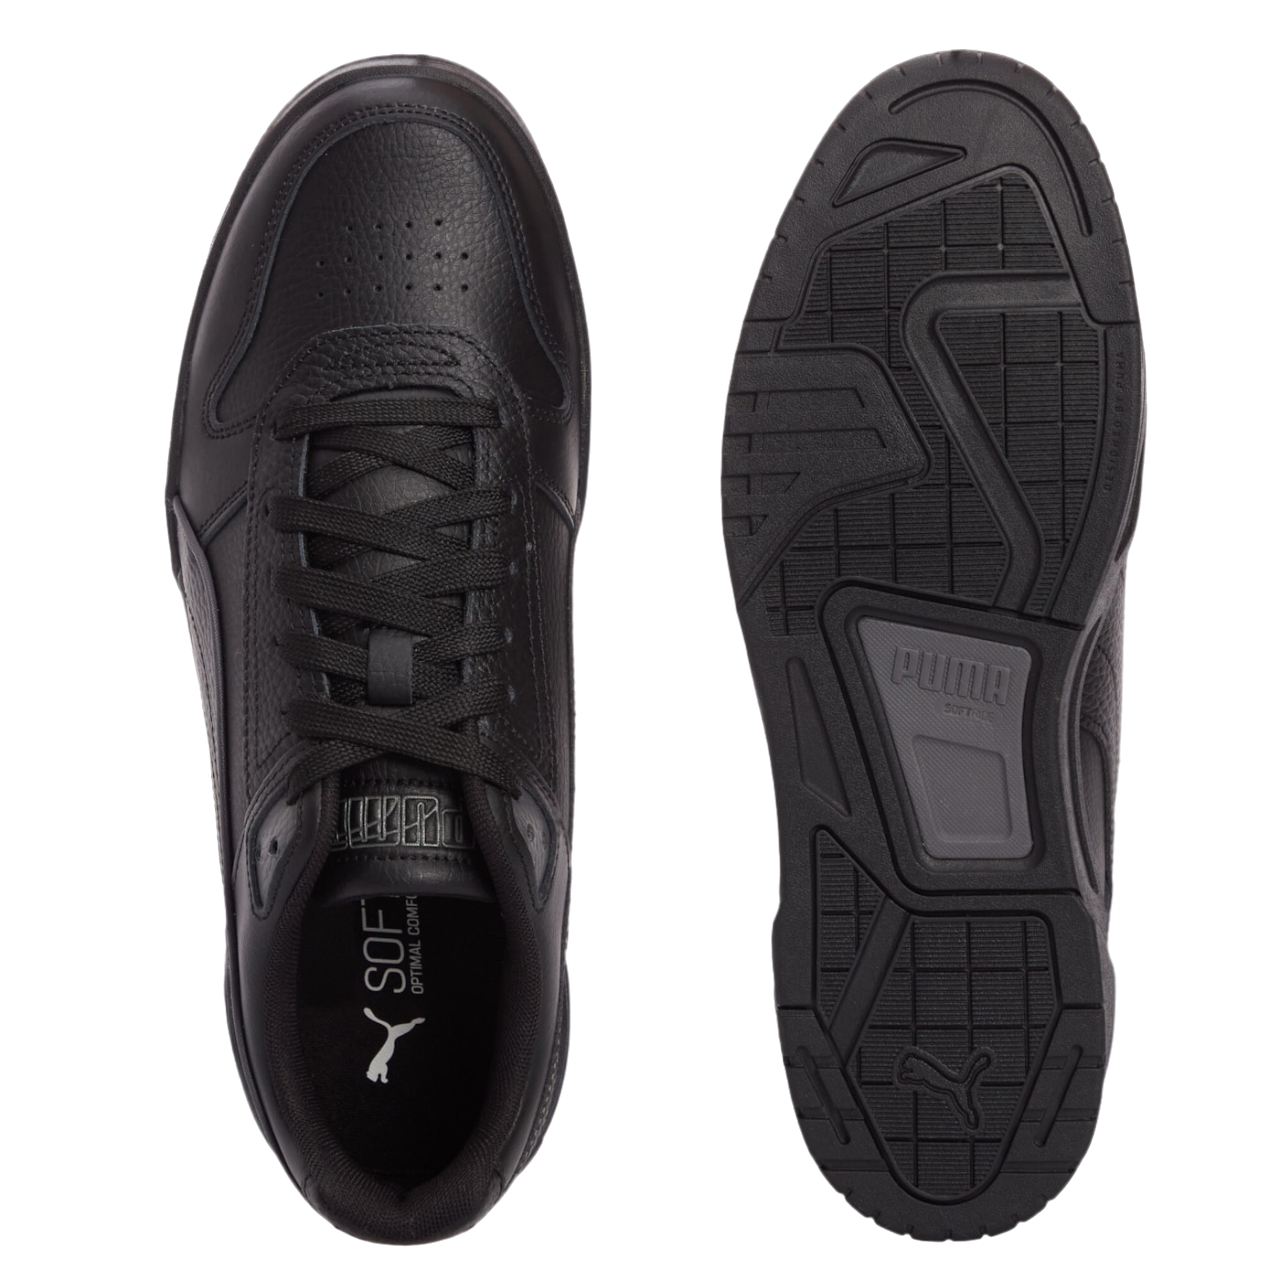 Puma scarpa sneakers da uomo Rebound Tech Classic 396553-01 nero